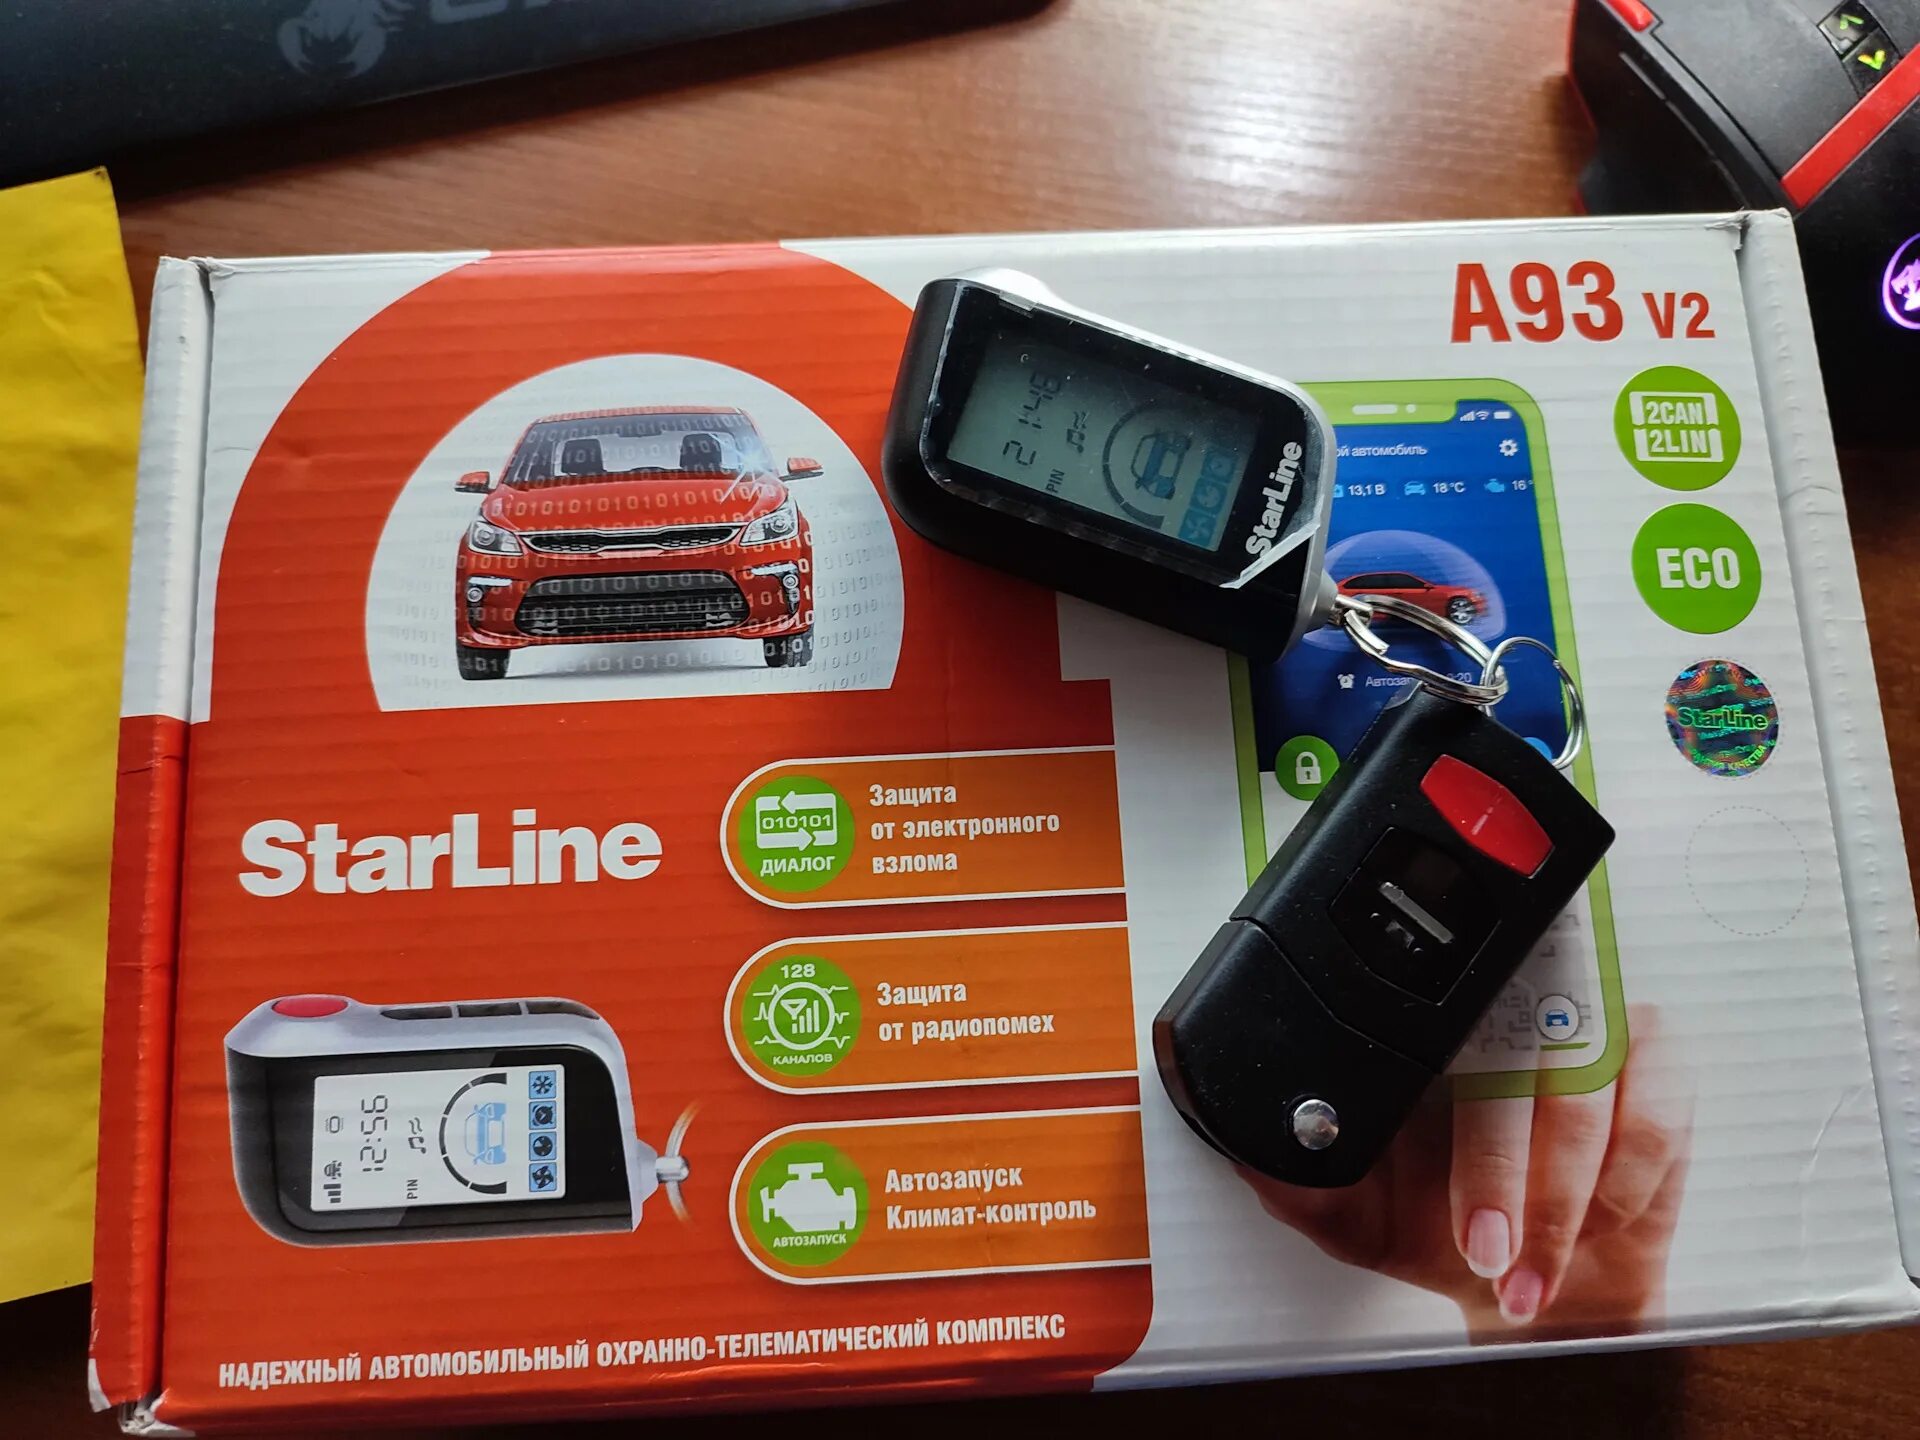 Сигнализация с автозапуском STARLINE a93. Автосигнализация STARLINE a93 v2 2can+2lin GSM Eco. STARLINE a93 Eco. Комплектация сигнализации старлайн а93 с автозапуском.